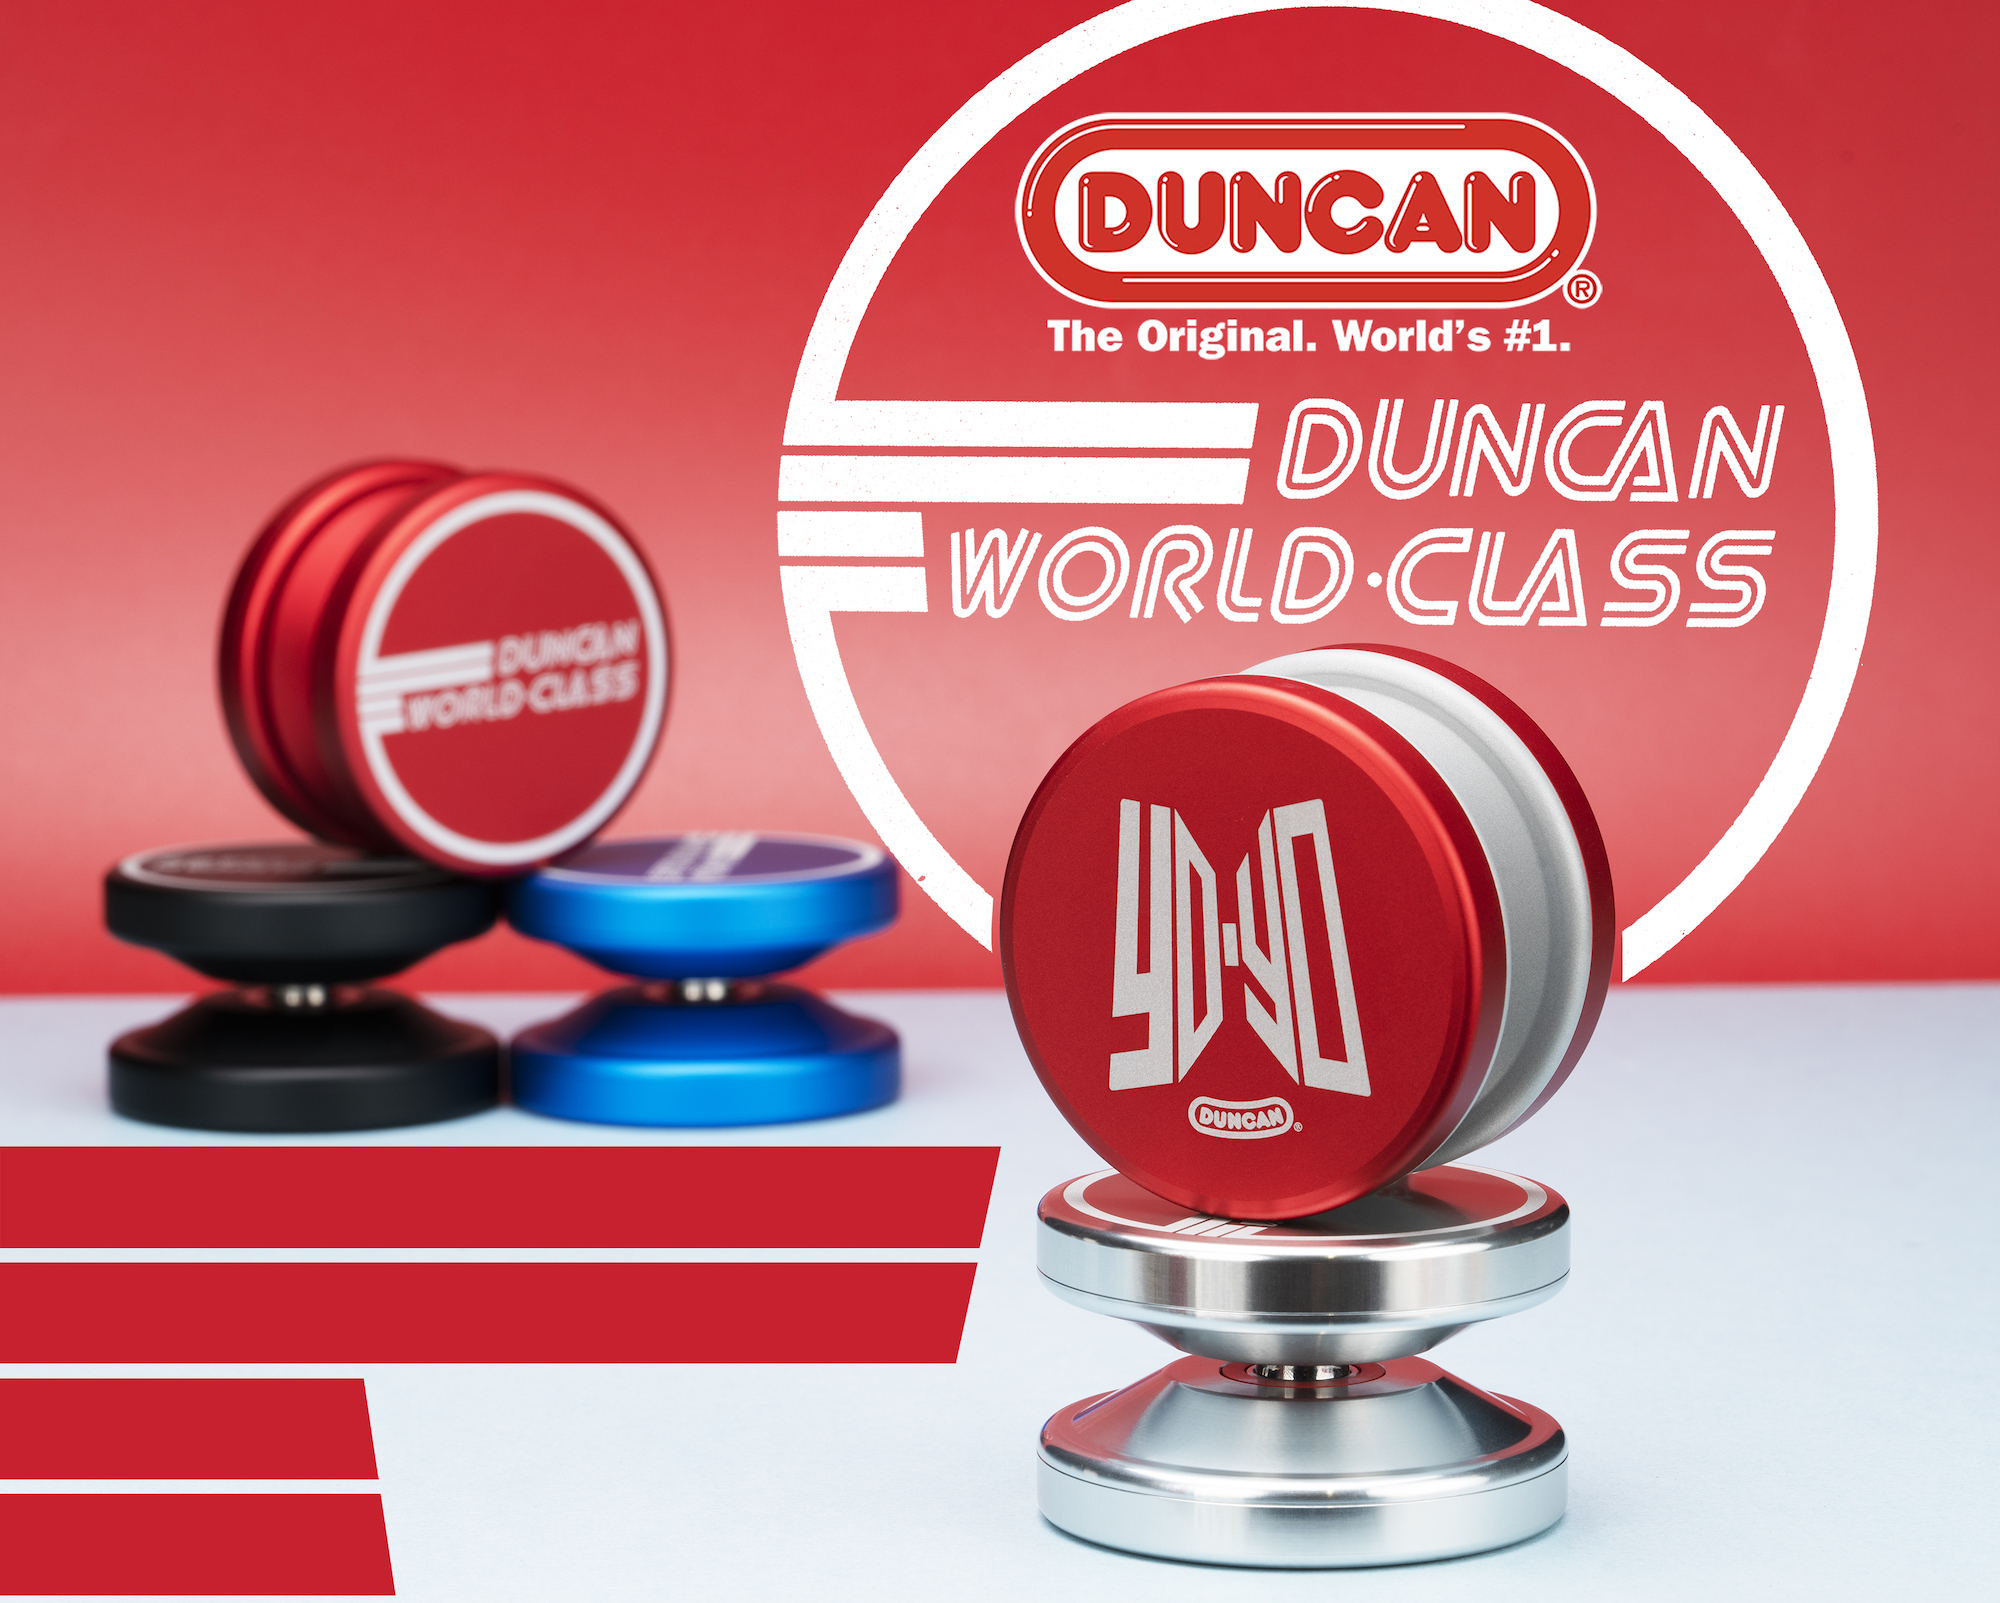 World-Class by Duncan